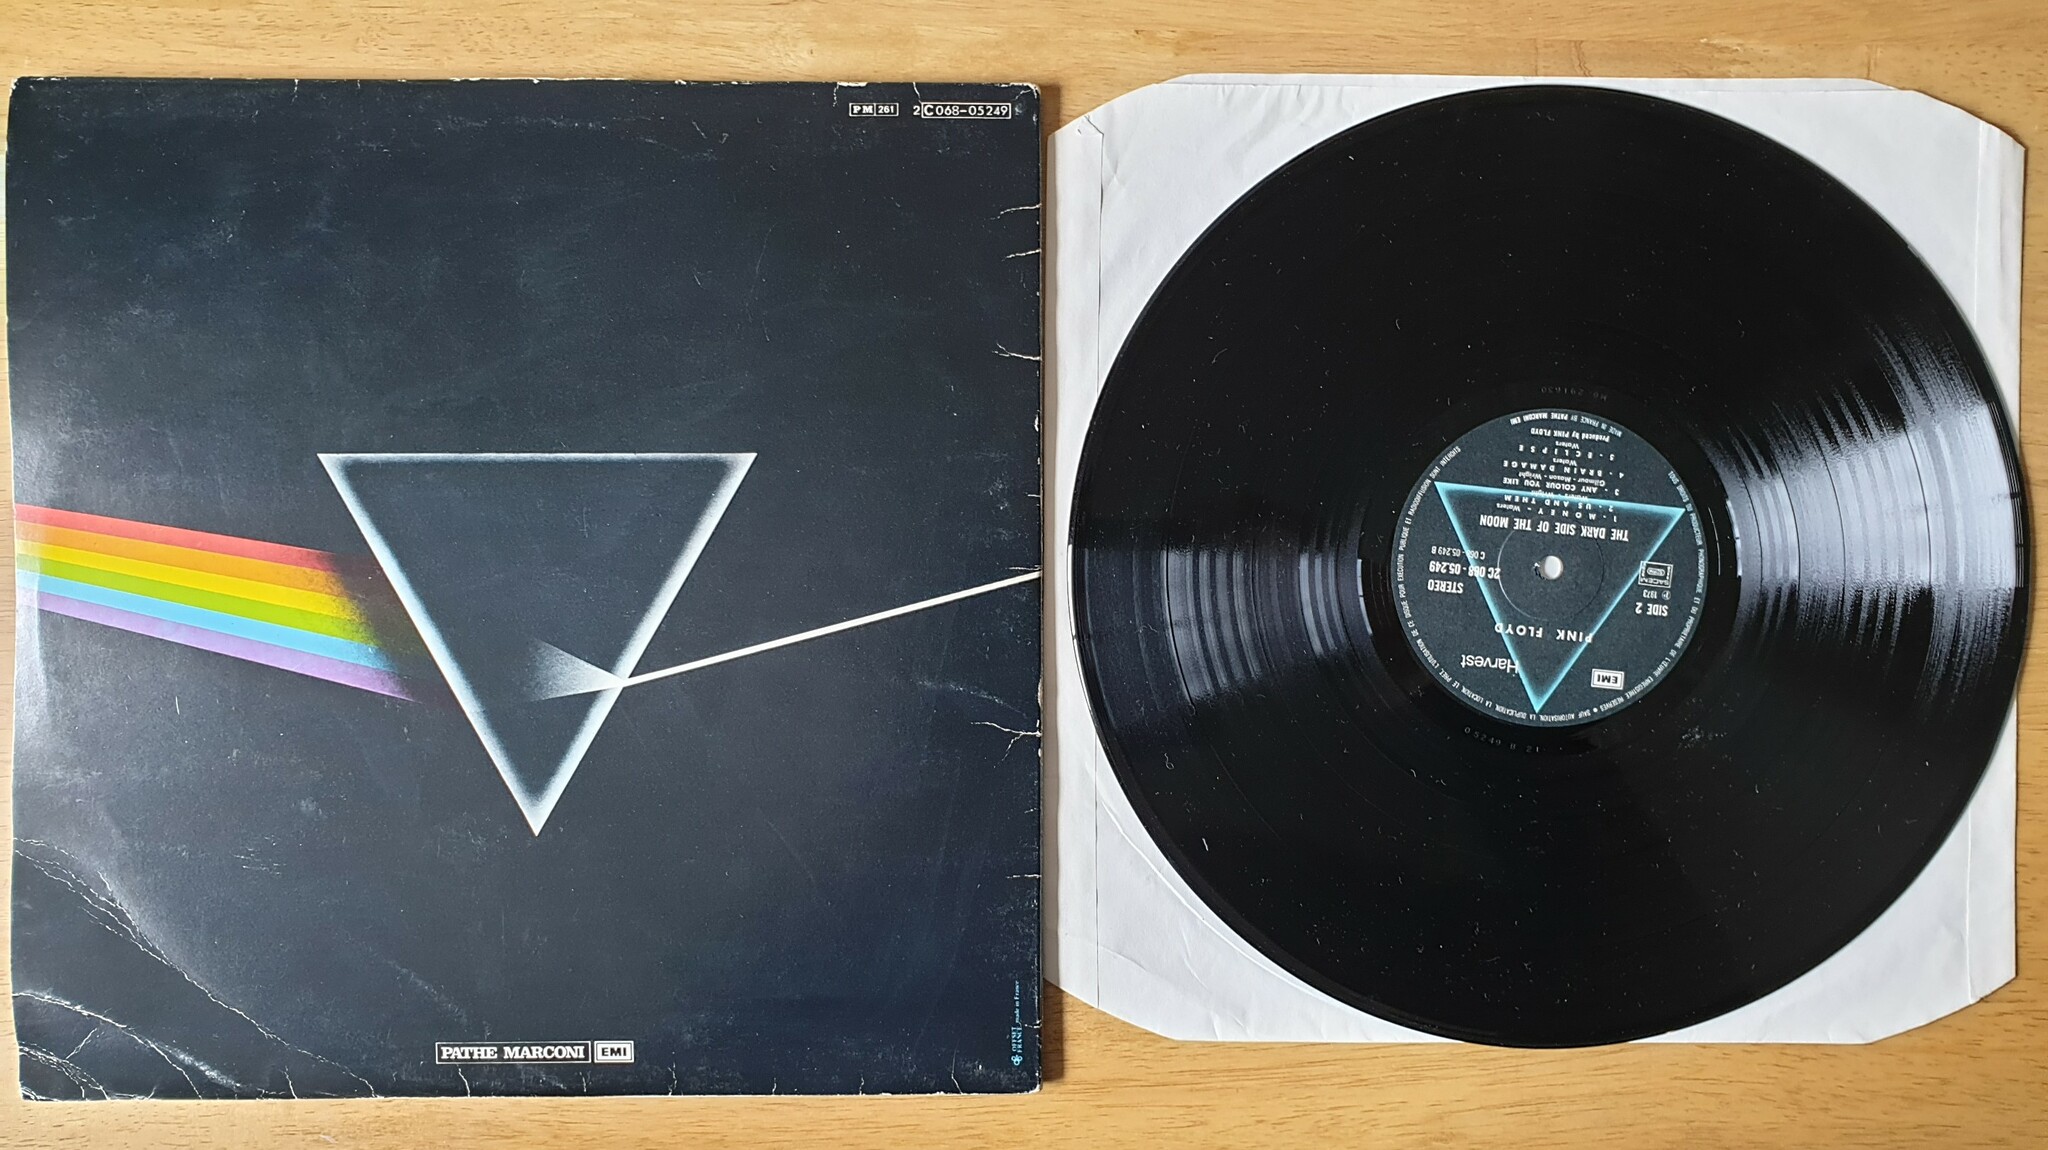 Pink Floyd, The dark side of the moon. Vinyl LP